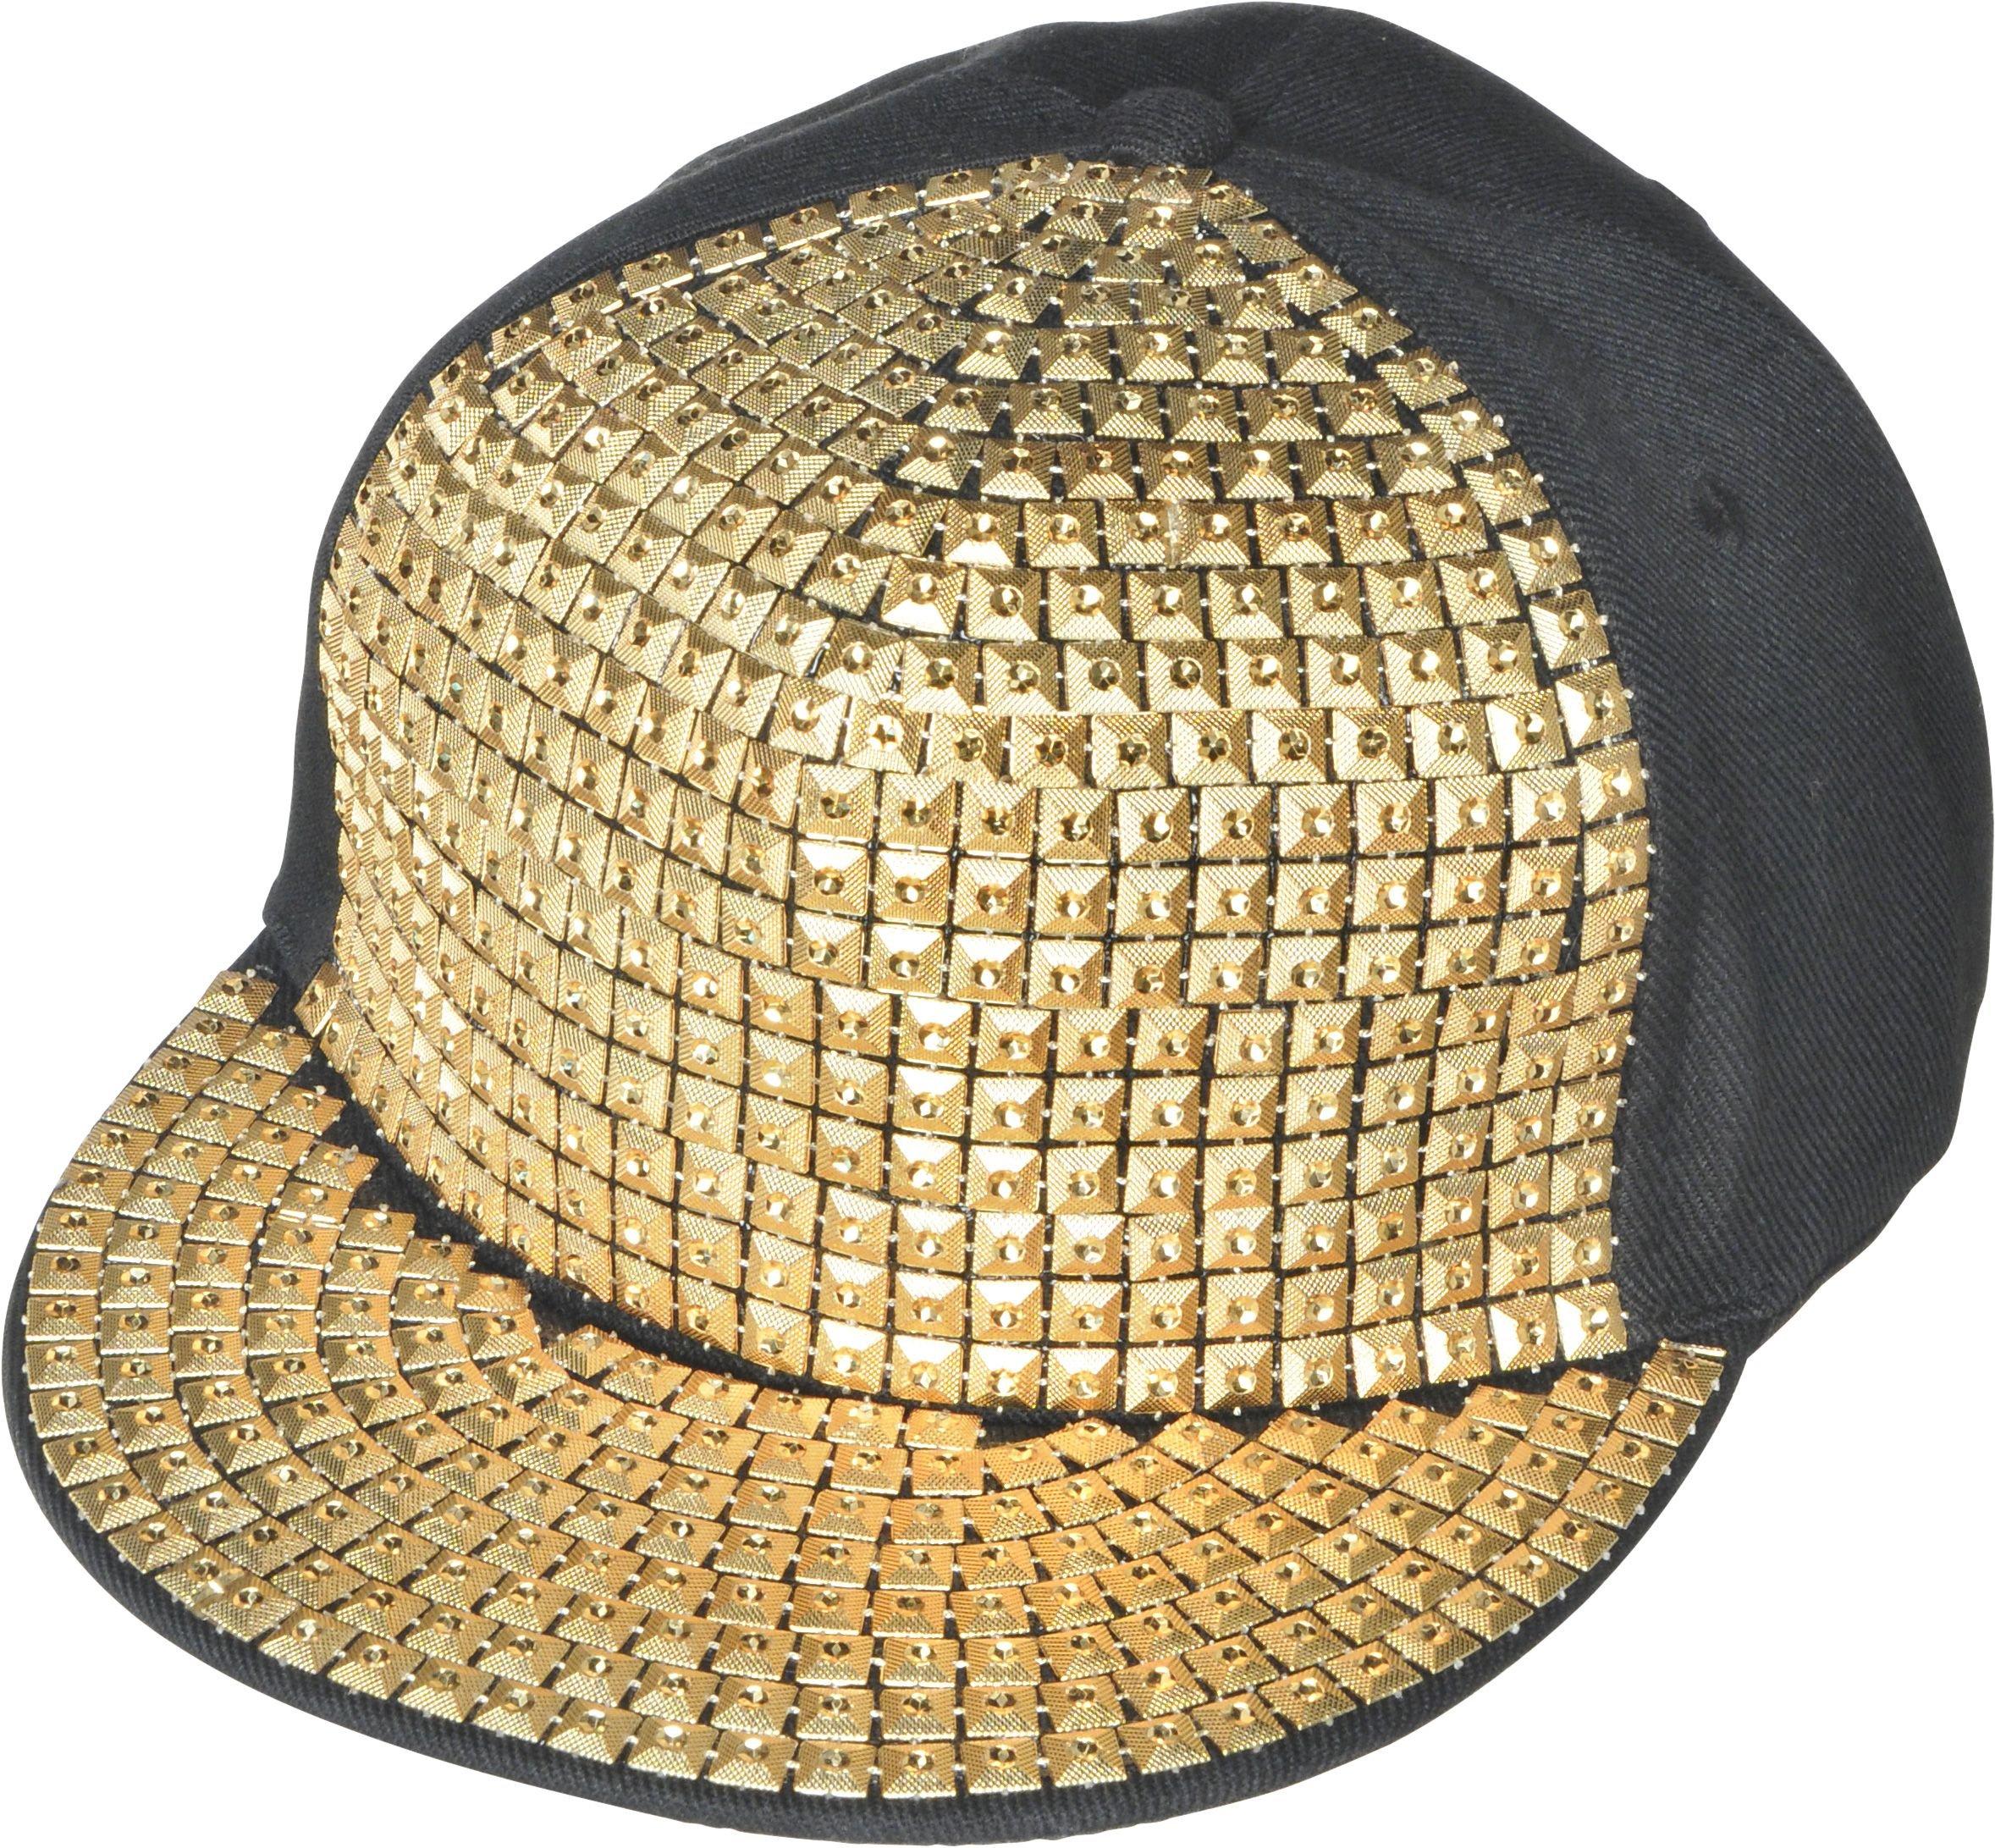 Gold Studded Hip Hop Hat